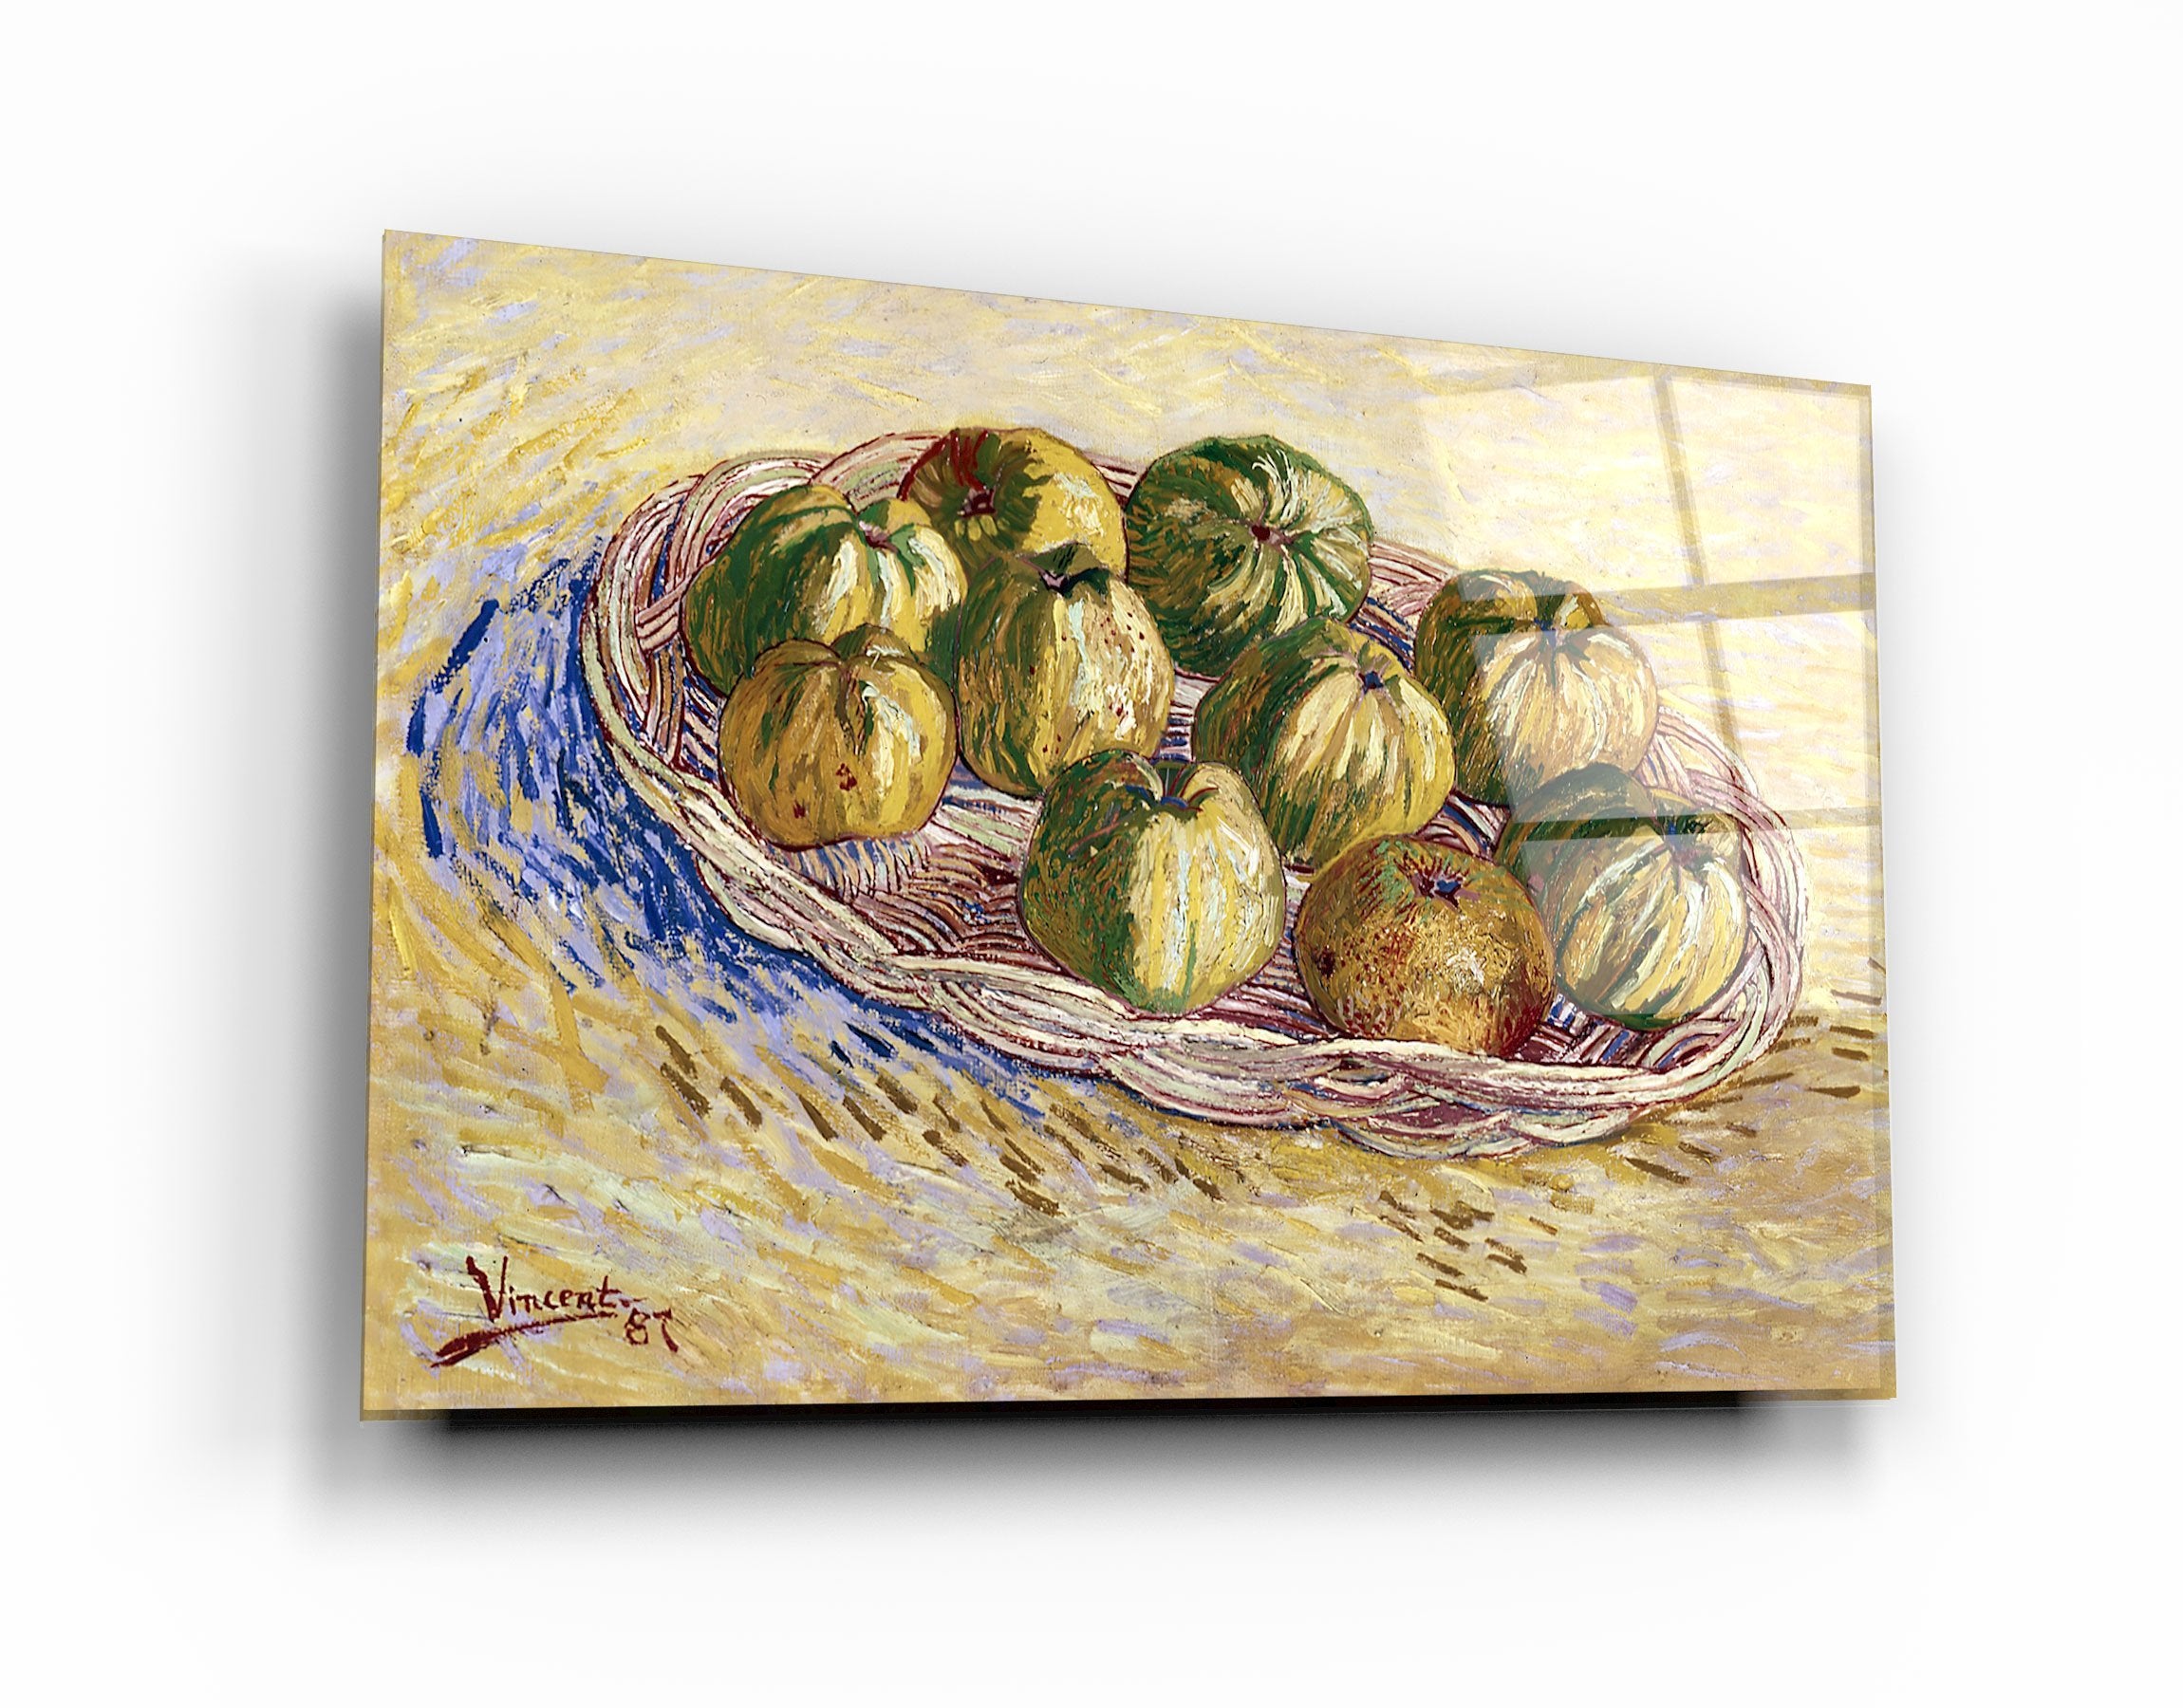 ・« Nature morte de Vincent van Gogh, panier de pommes (1887) »・Art mural en verre